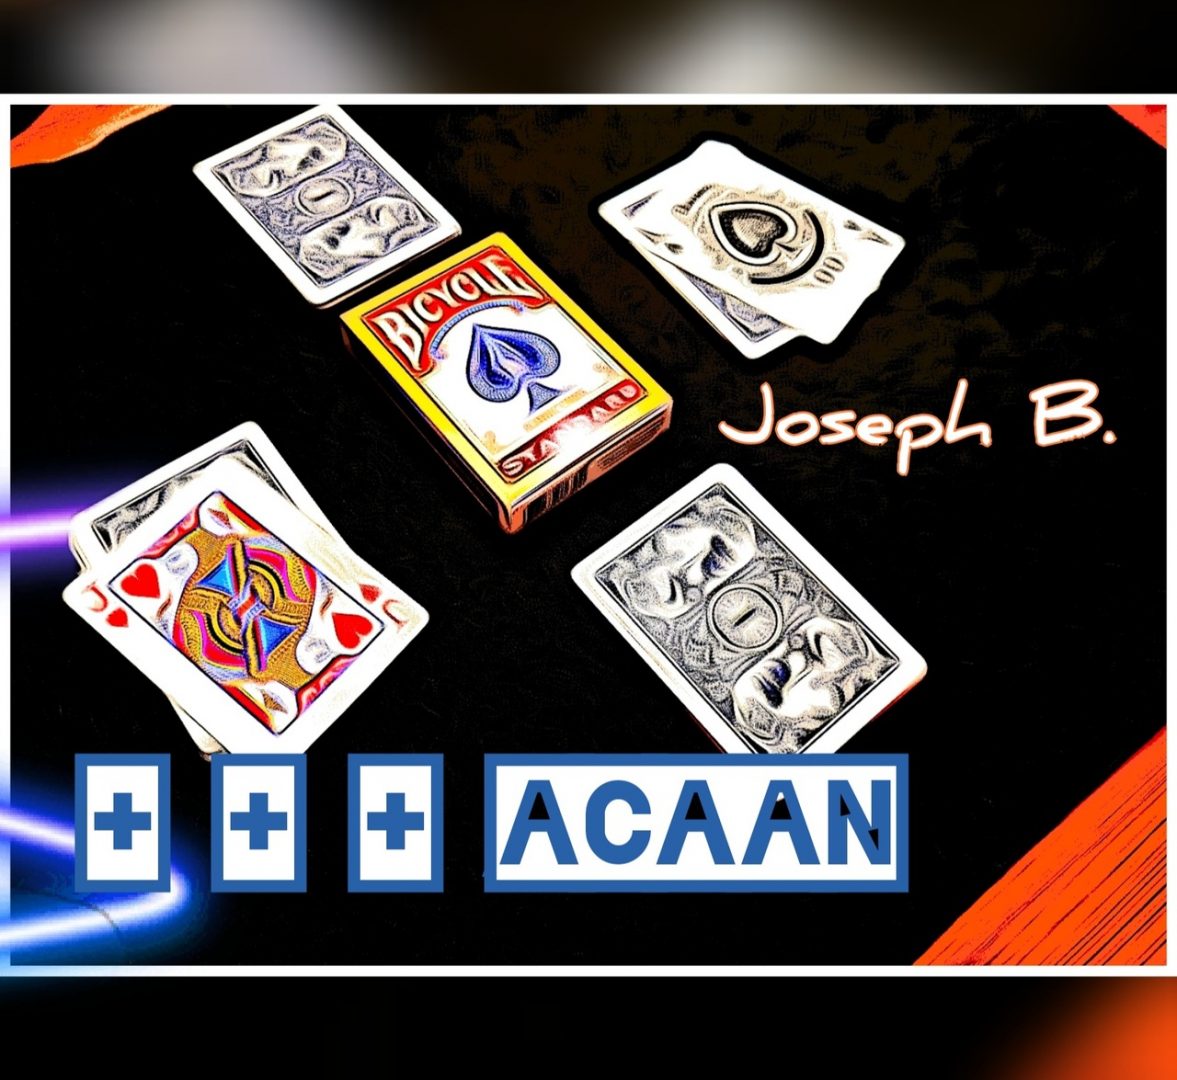 +++ ACAAN by Joseph B. (Full Download)